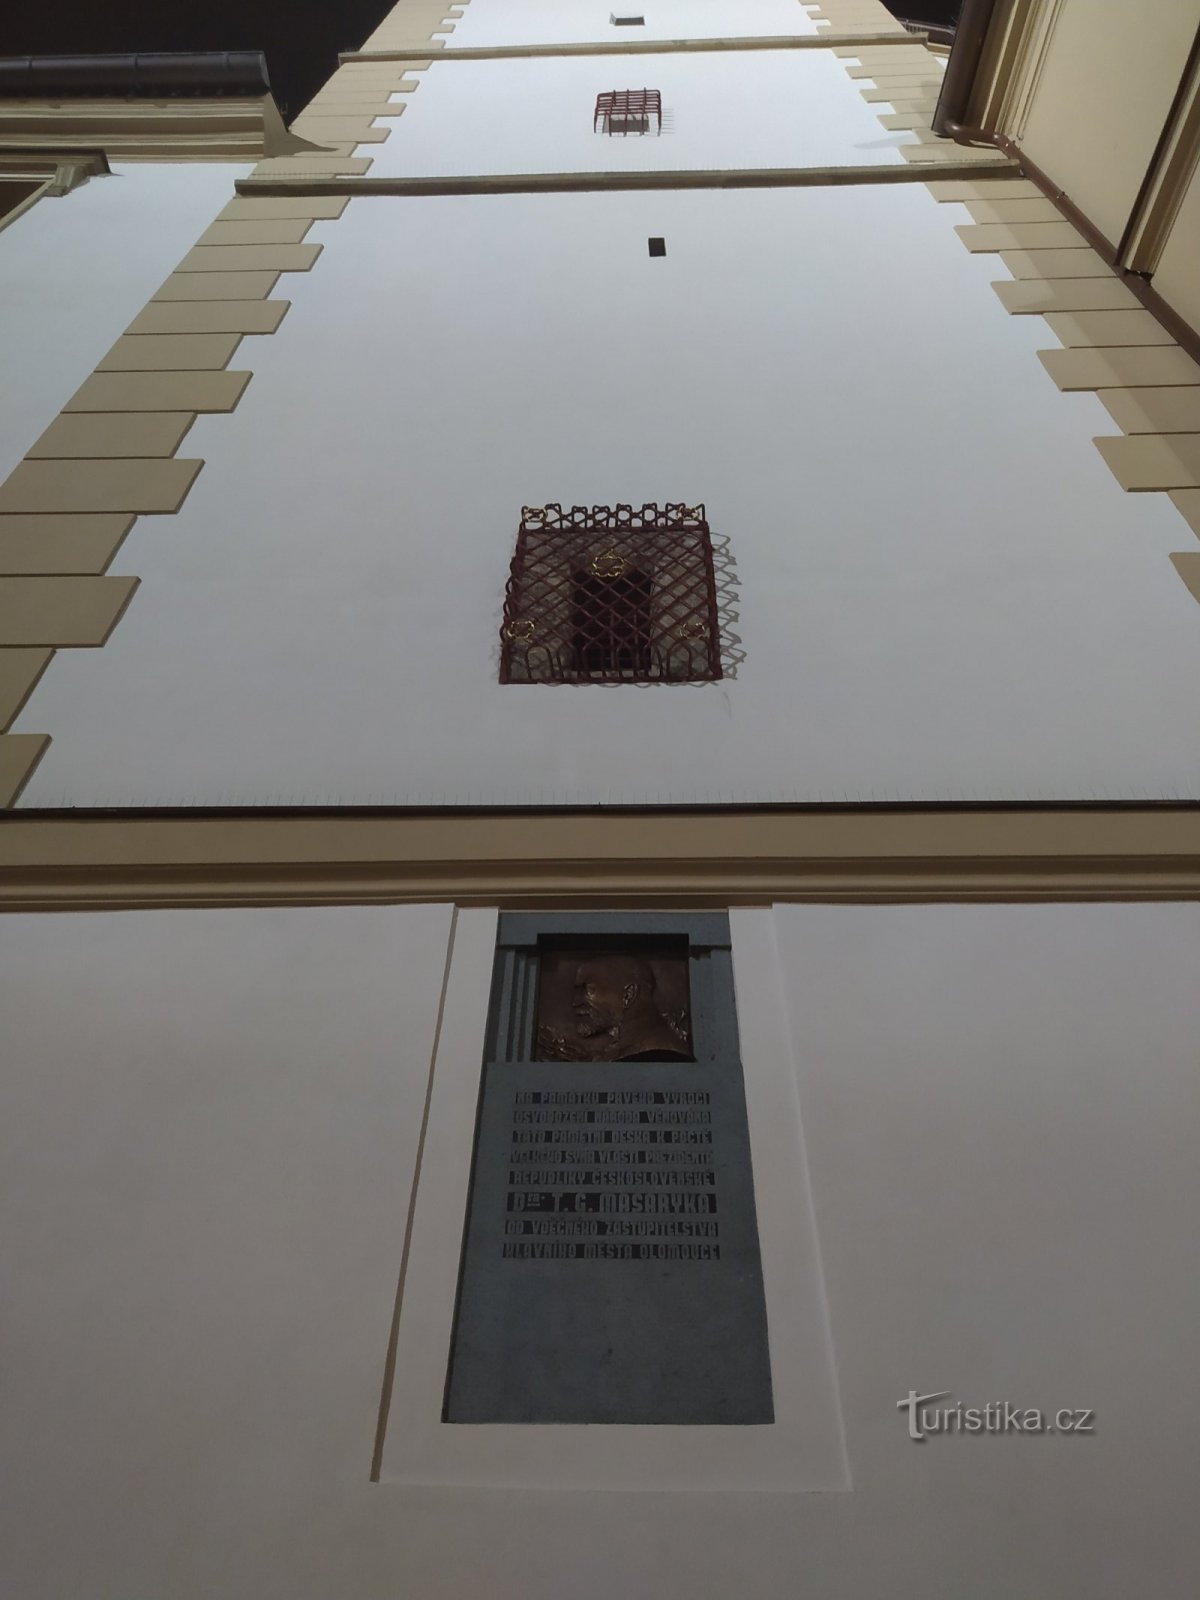 Ayuntamiento, placa conmemorativa de Masaryk